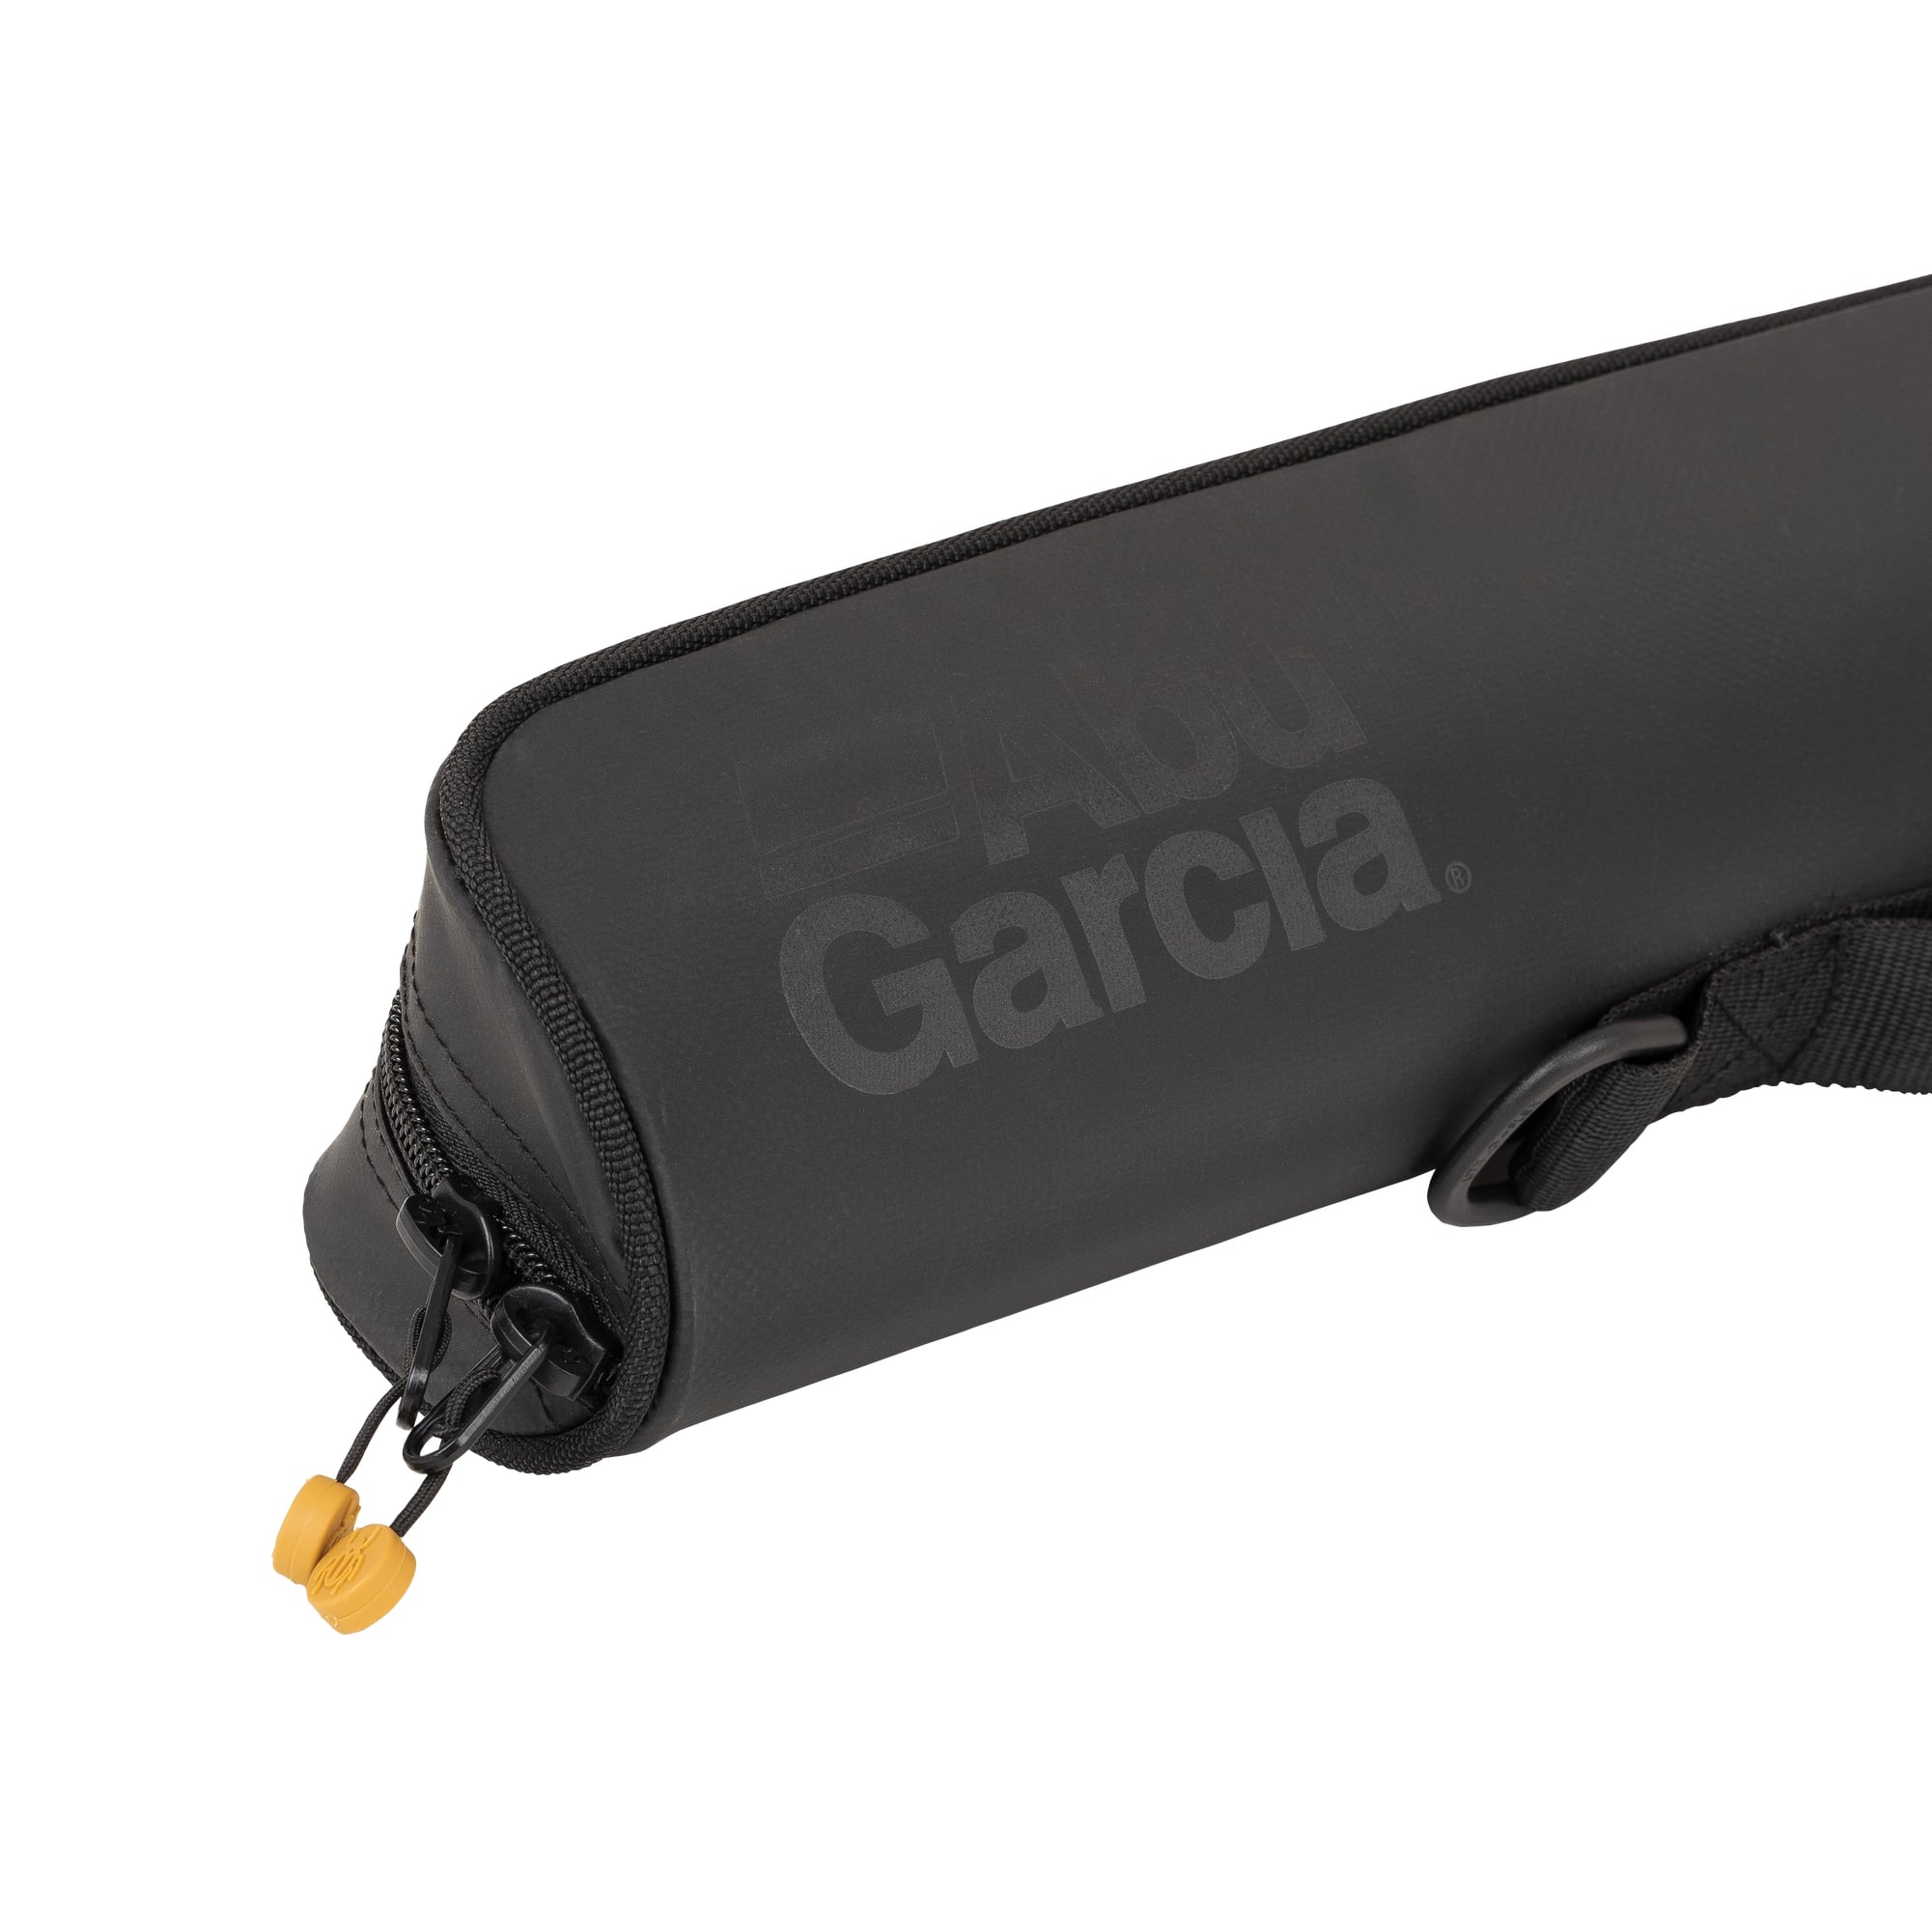 Abu Garcia Carabus Semi-rigid Rod Case